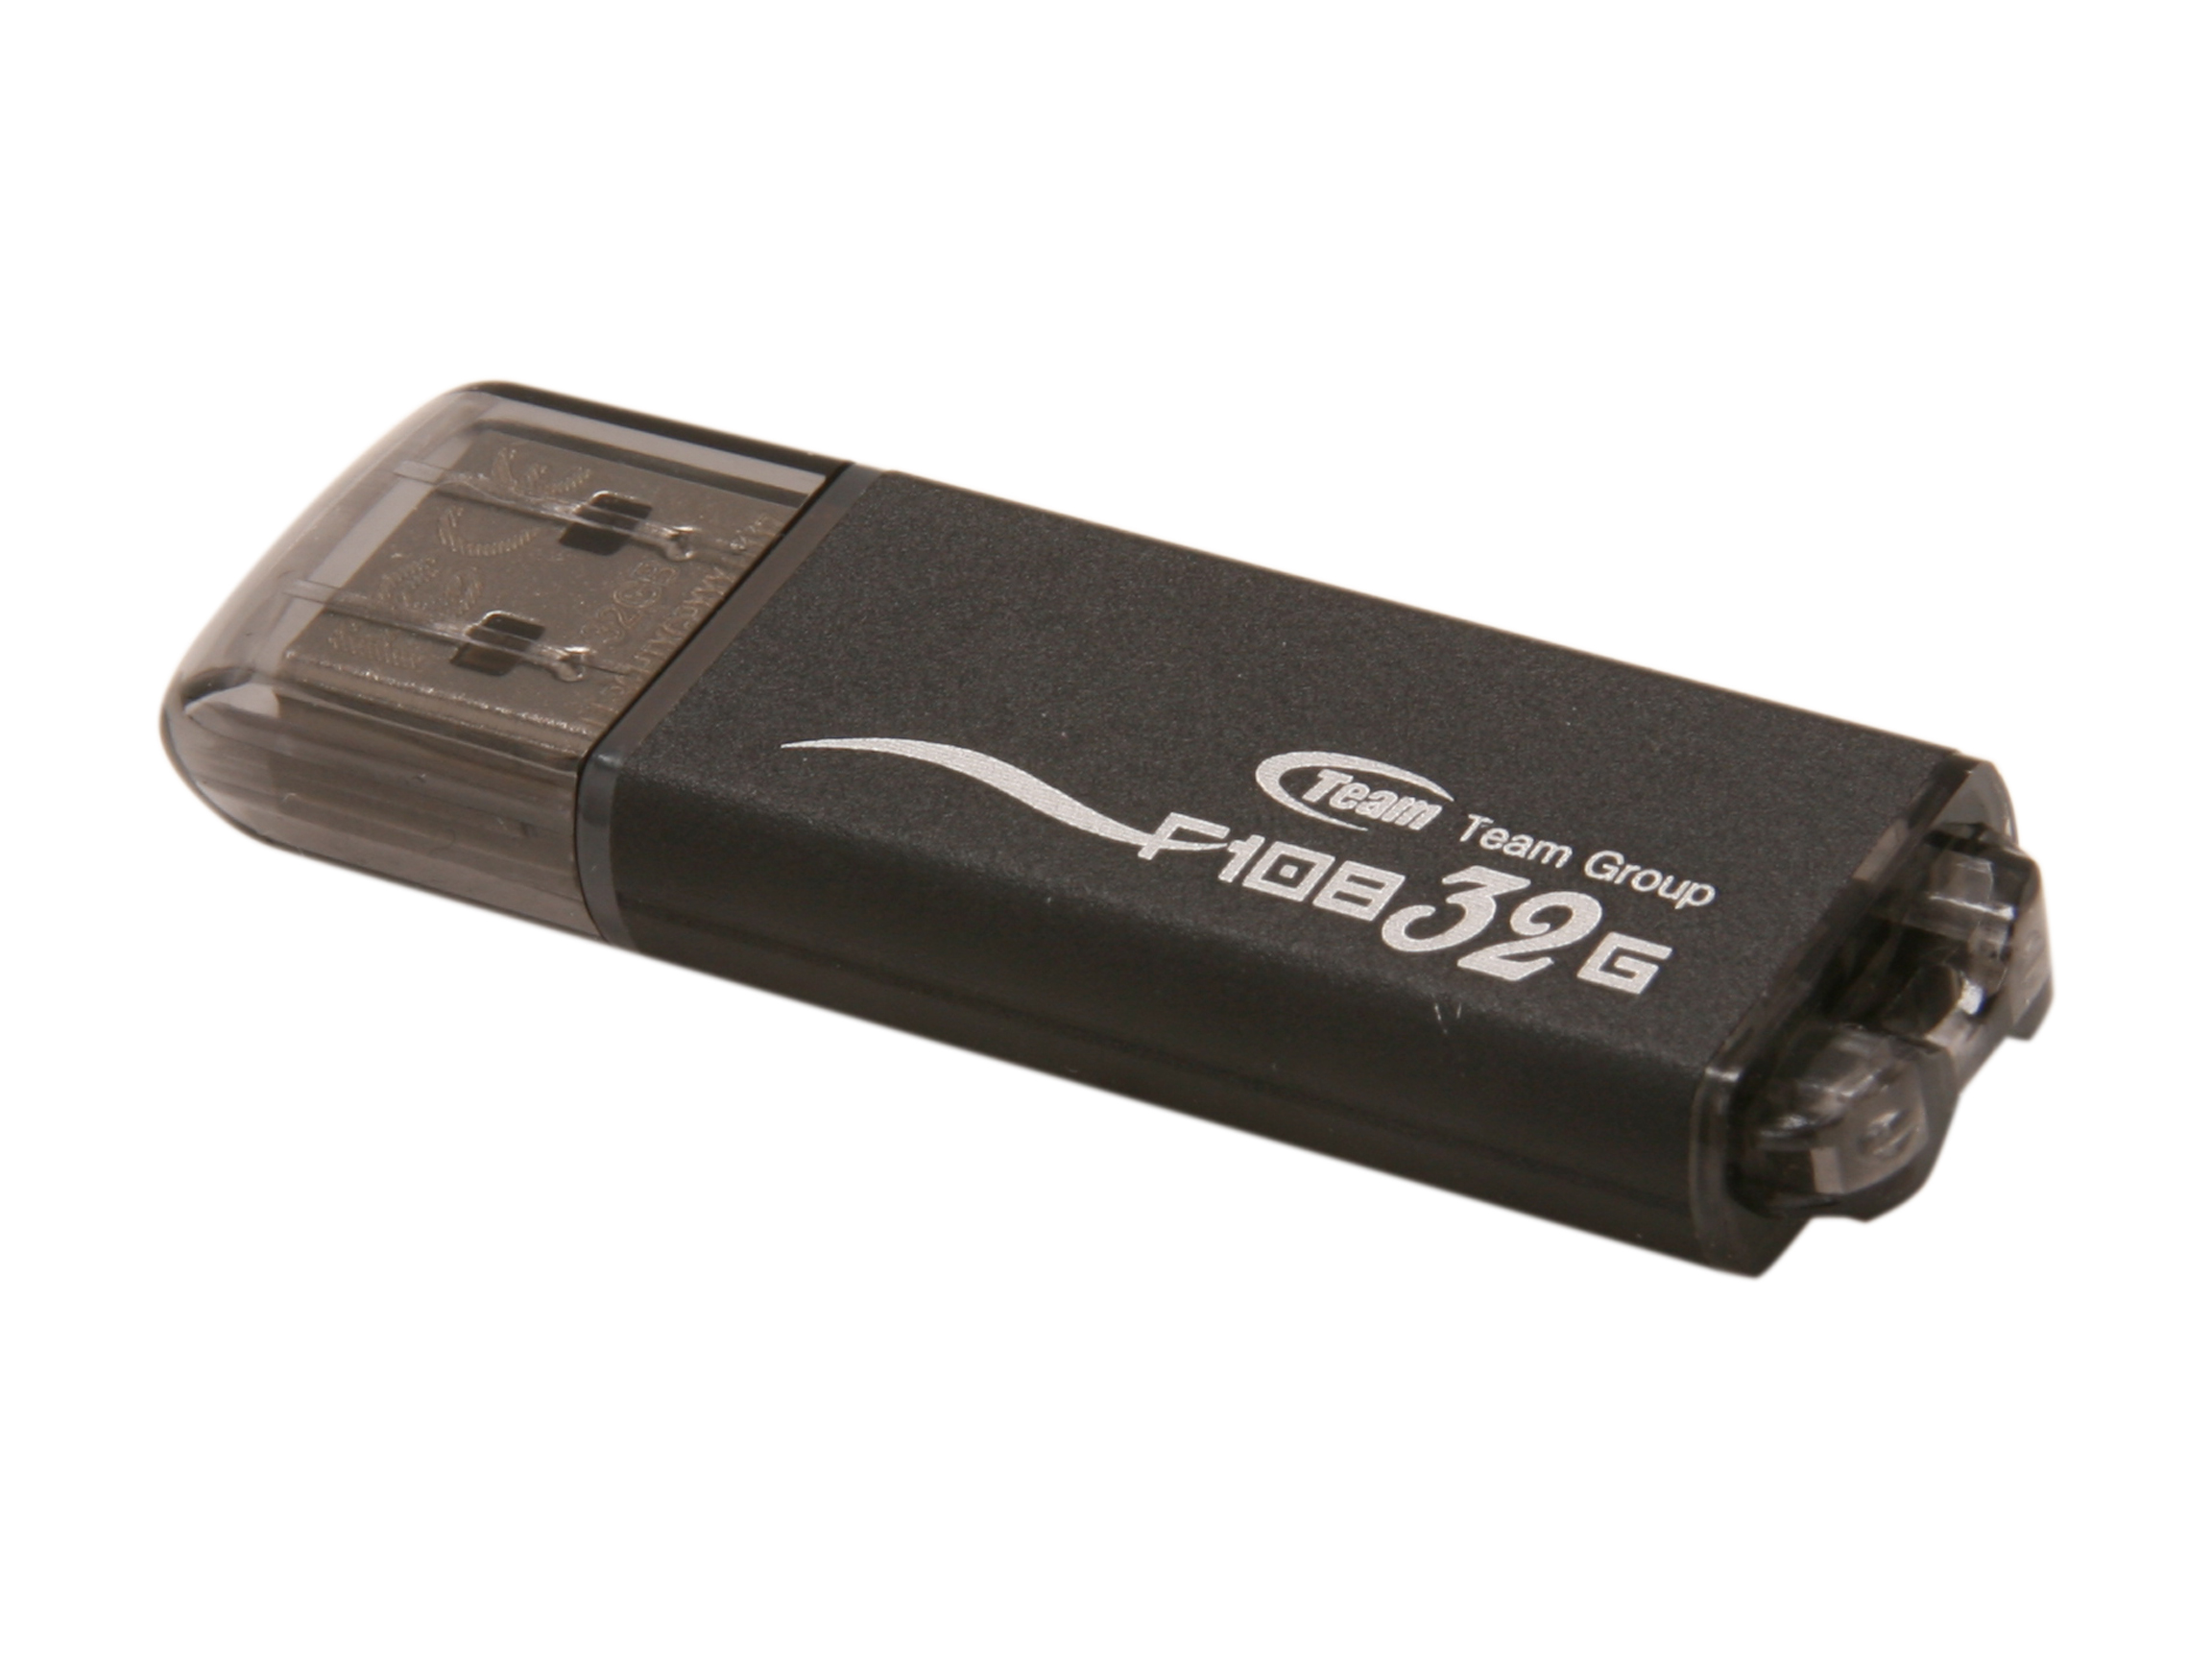 Team F108 32GB USB 2.0 Flash Drive (Black) Model TG032GF108BX